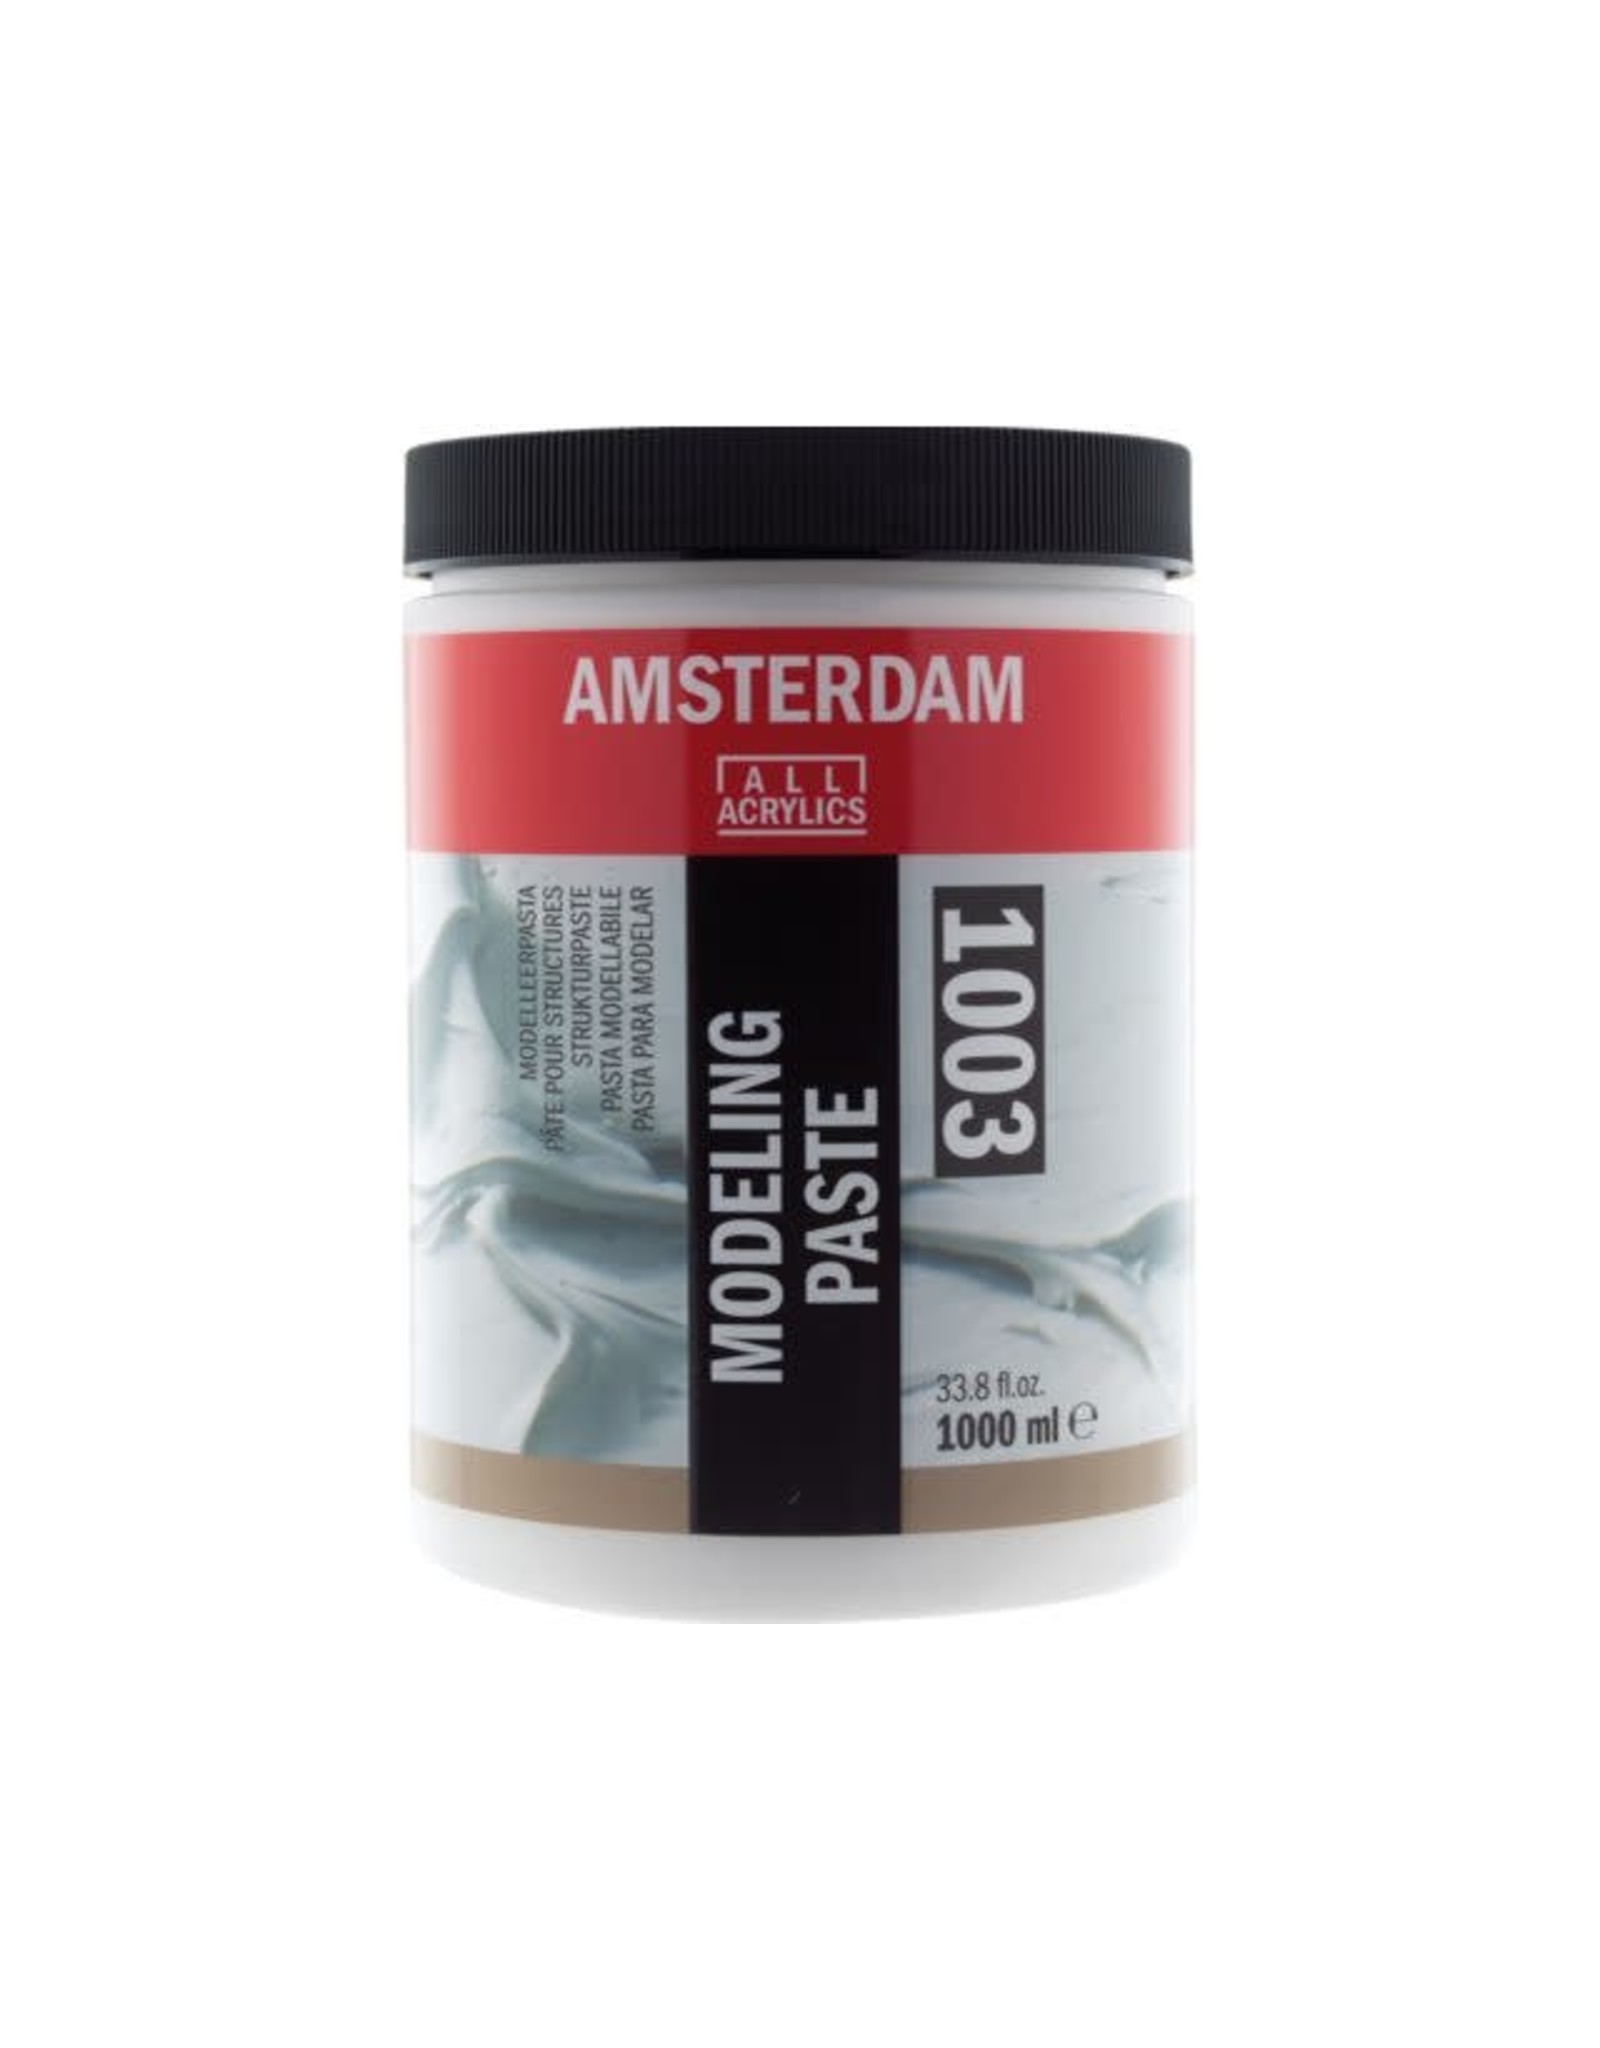 Amsterdam Modeling paste